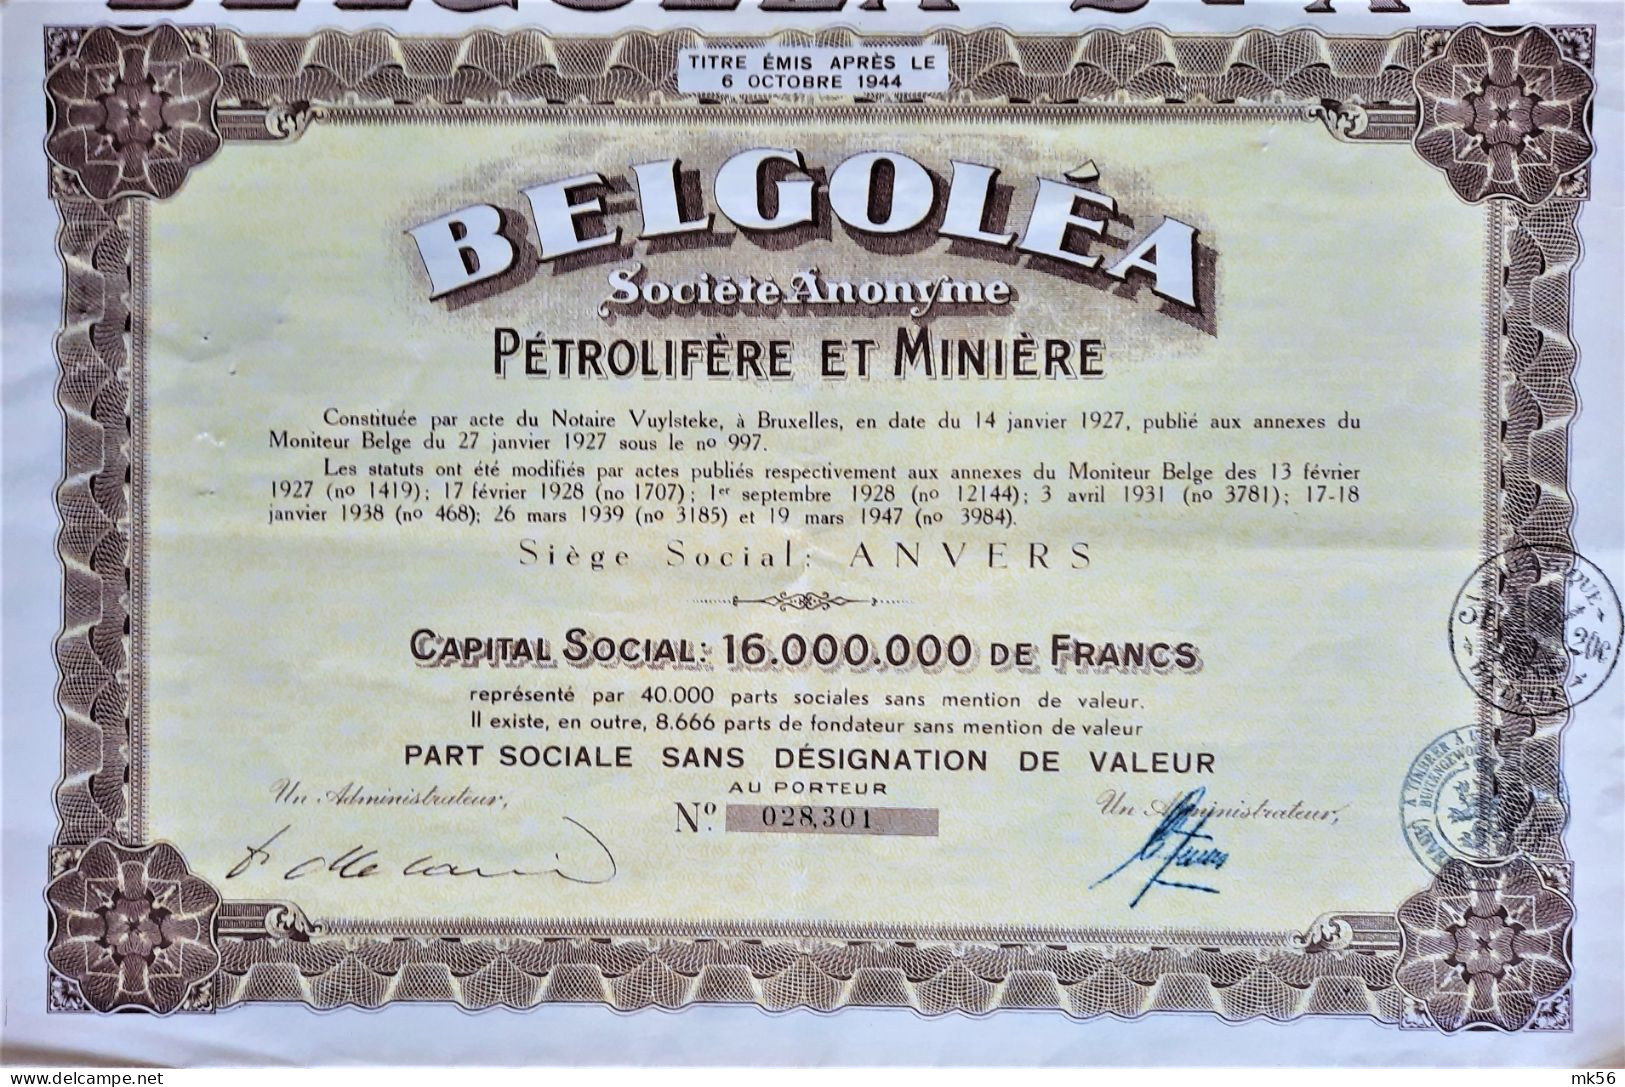 Belgoléa - S.A. Pétrolifère Et Minière - 1947 - Anvers - Oil